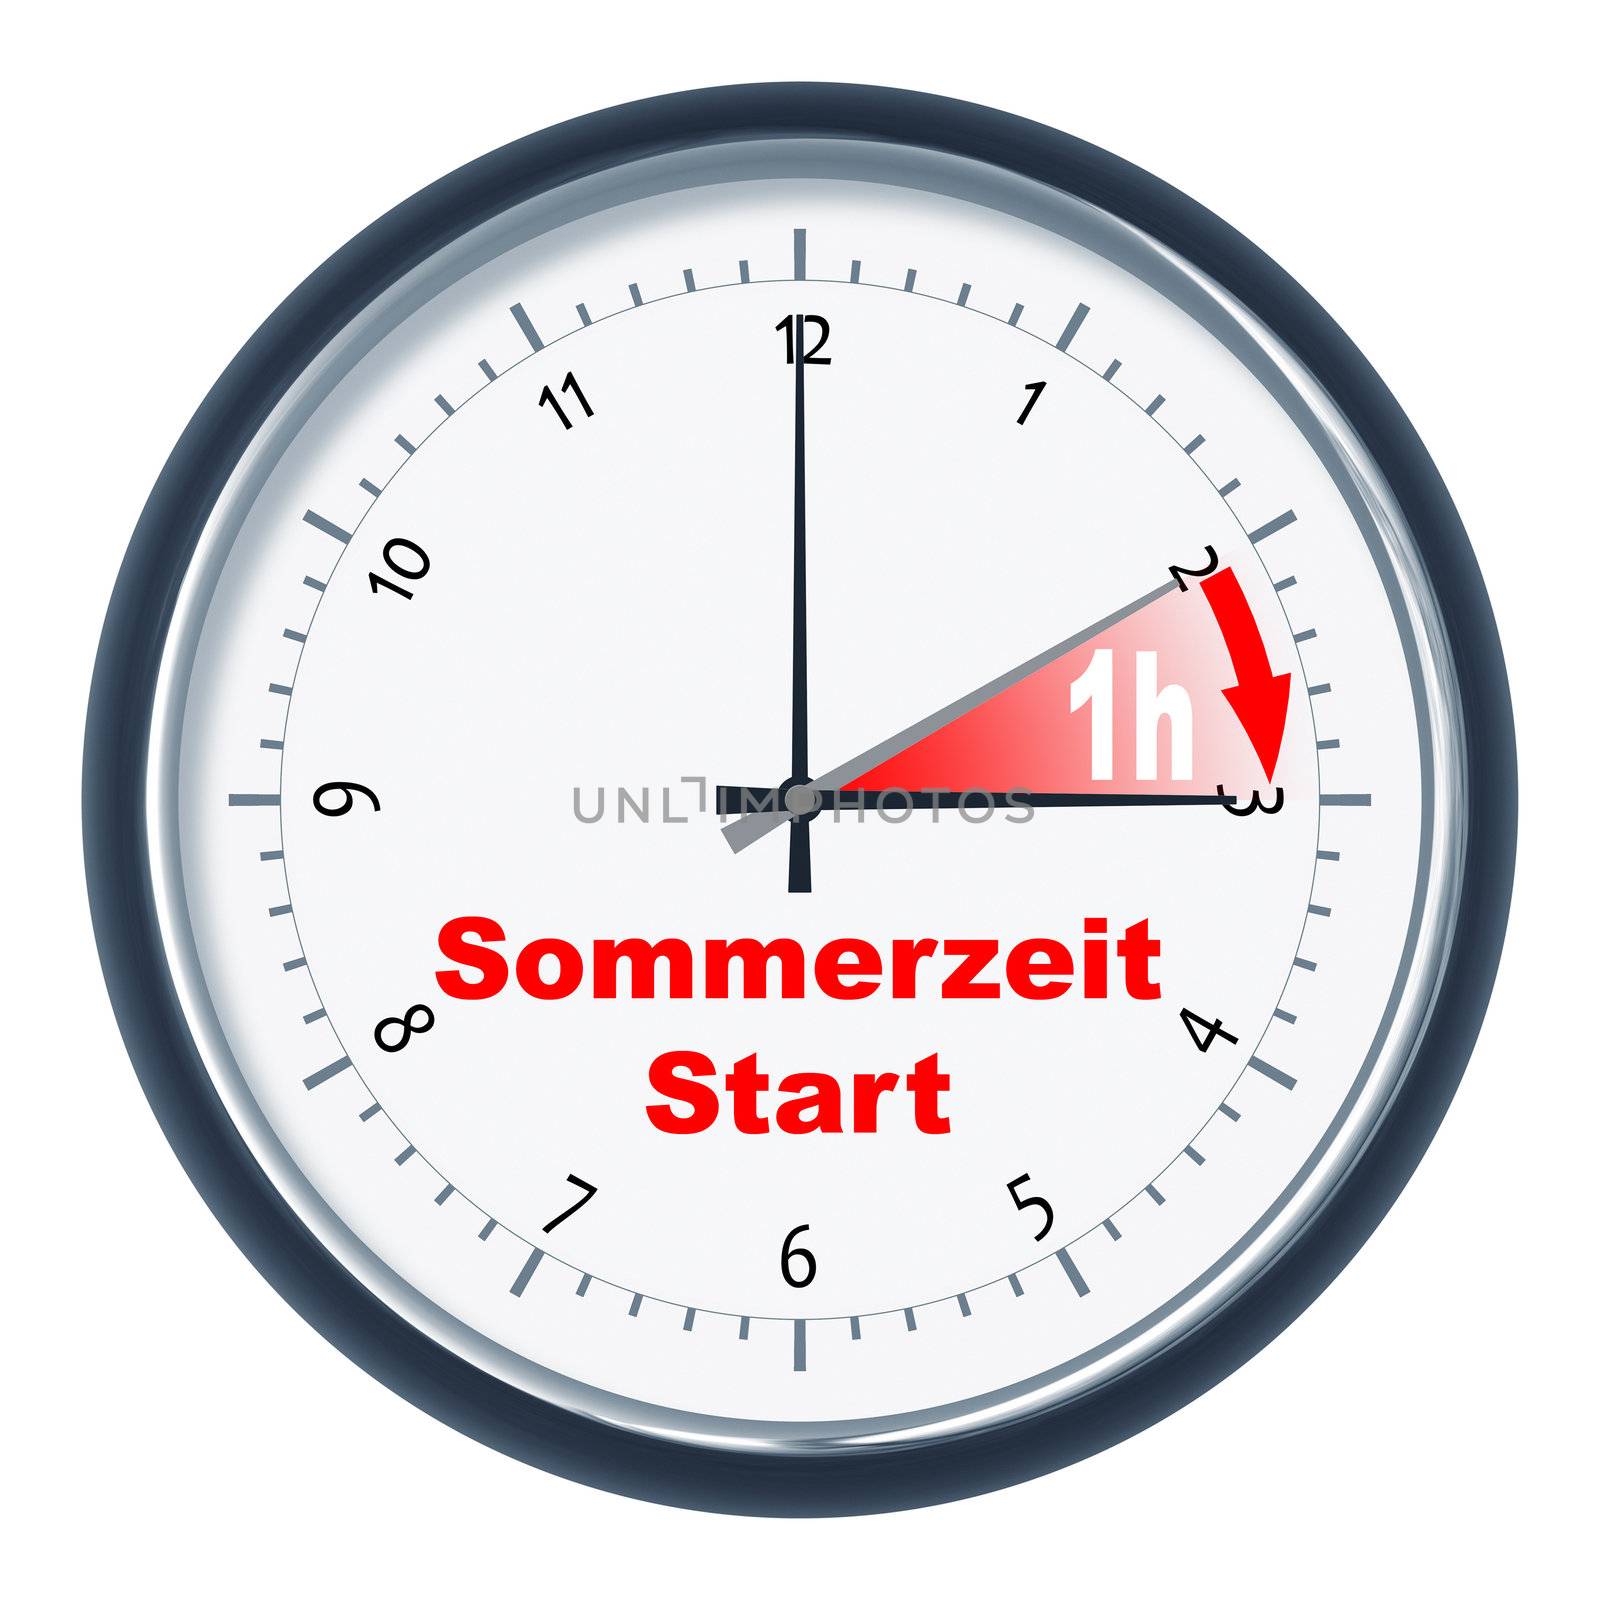 An image of a nice clock "Sommerzeit Start"